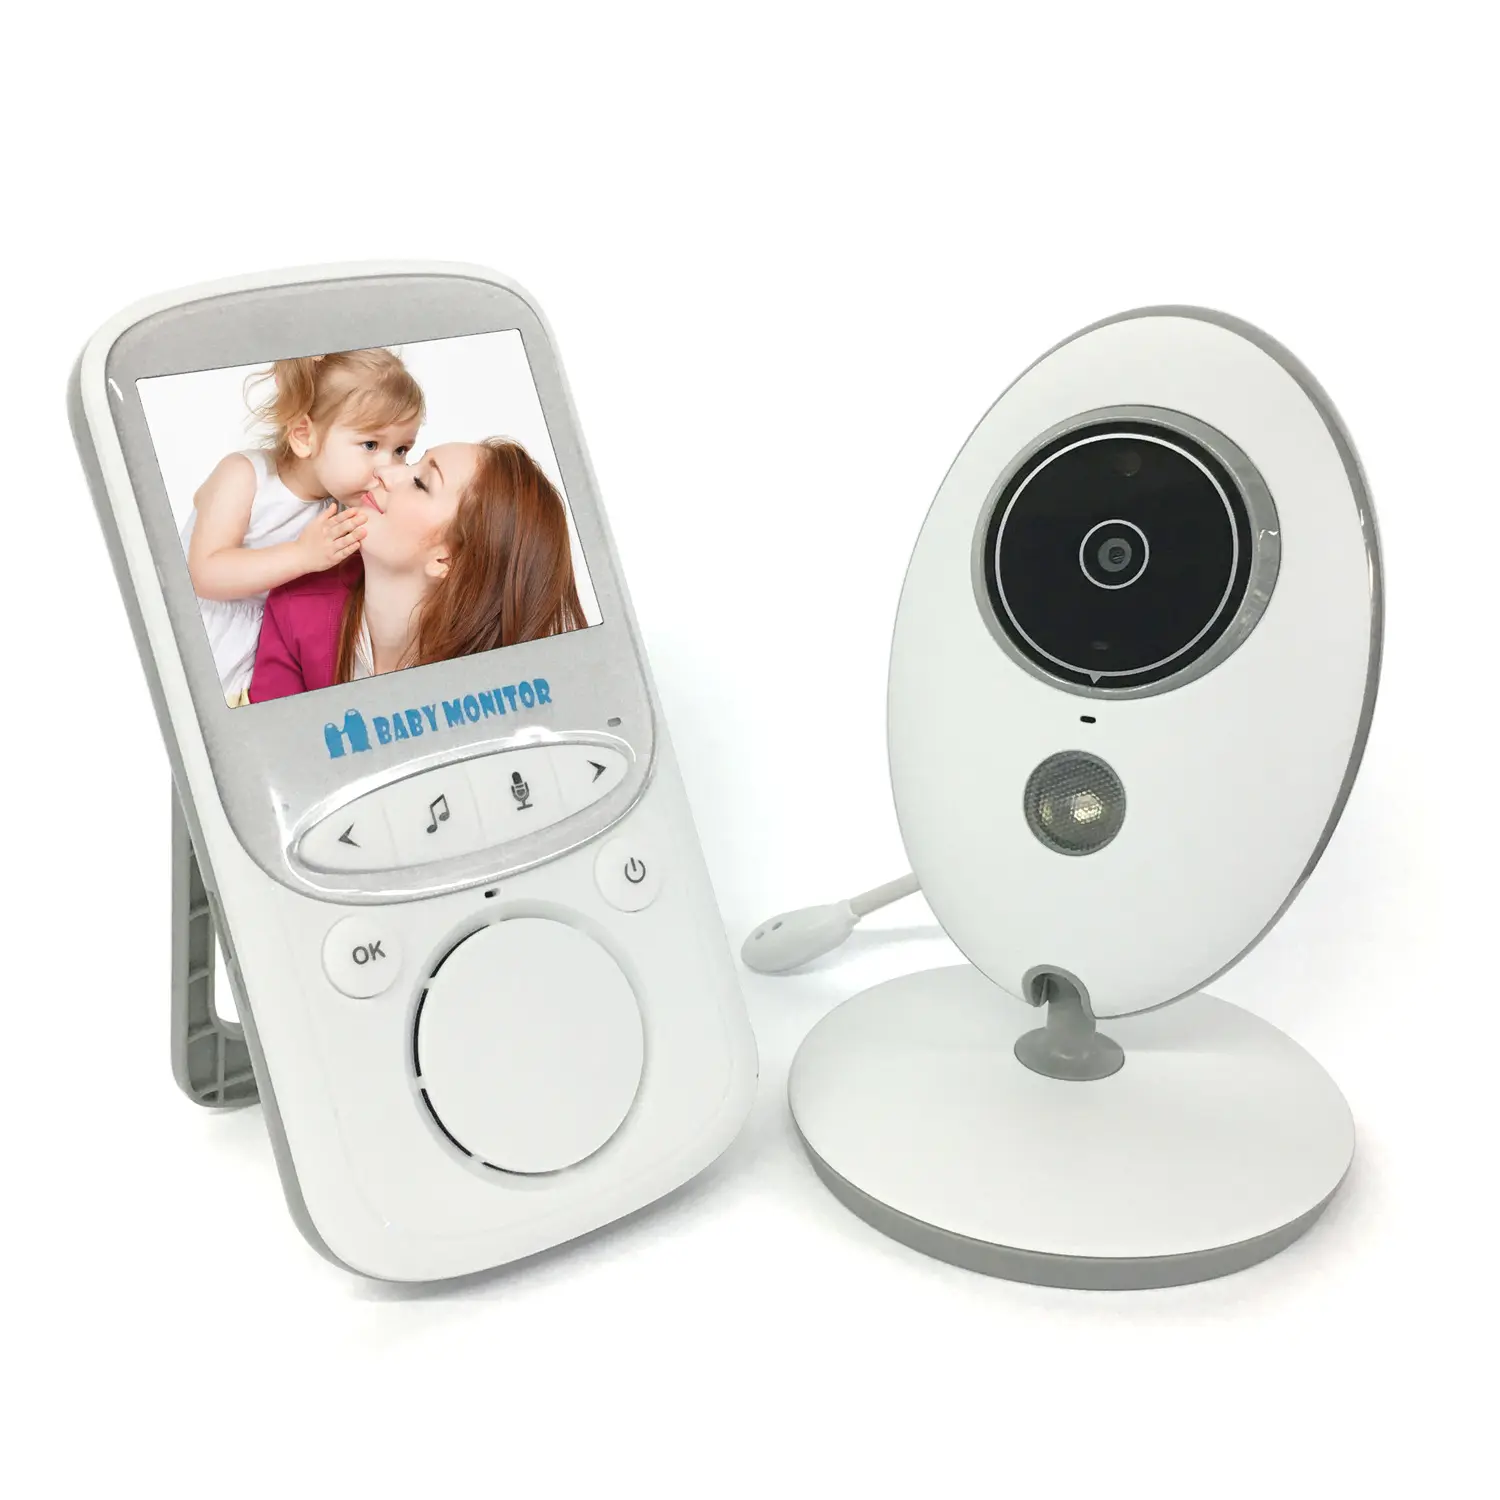 VB605 2.4 inch color display wireless security camera digital baby monitor night vision baby monitoring camera